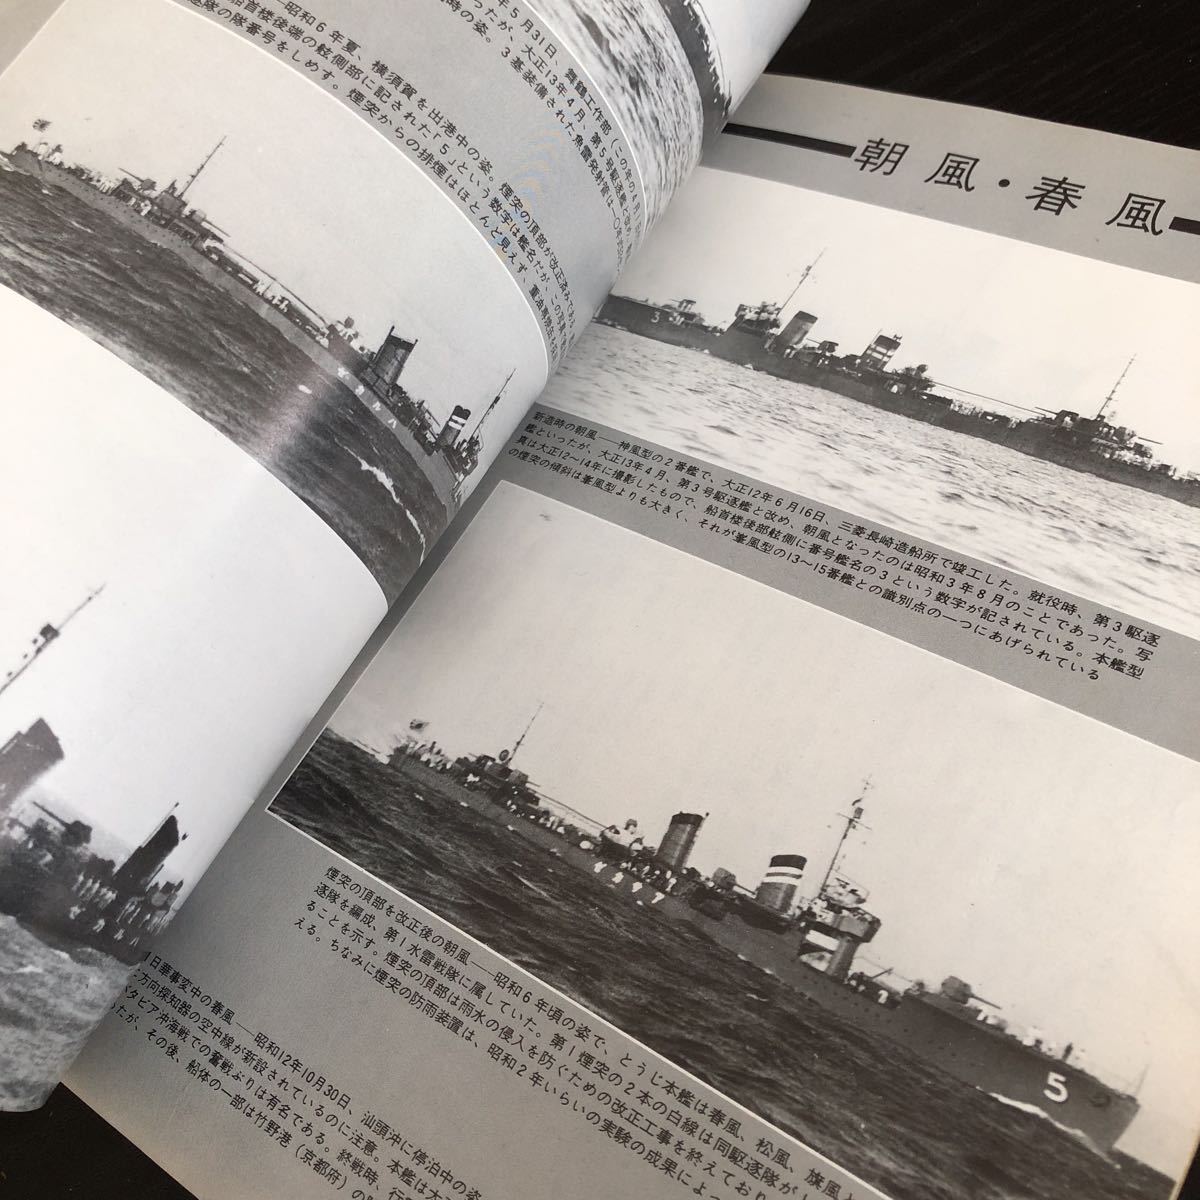 ル70 丸スペシャル 日本の駆逐艦 昭和56年5月 1981年 潮書房 日本海軍 軍艦 潜水艦 戦争 戦後 歴史 戦艦 特攻兵器 船 資料 睦月型_画像5